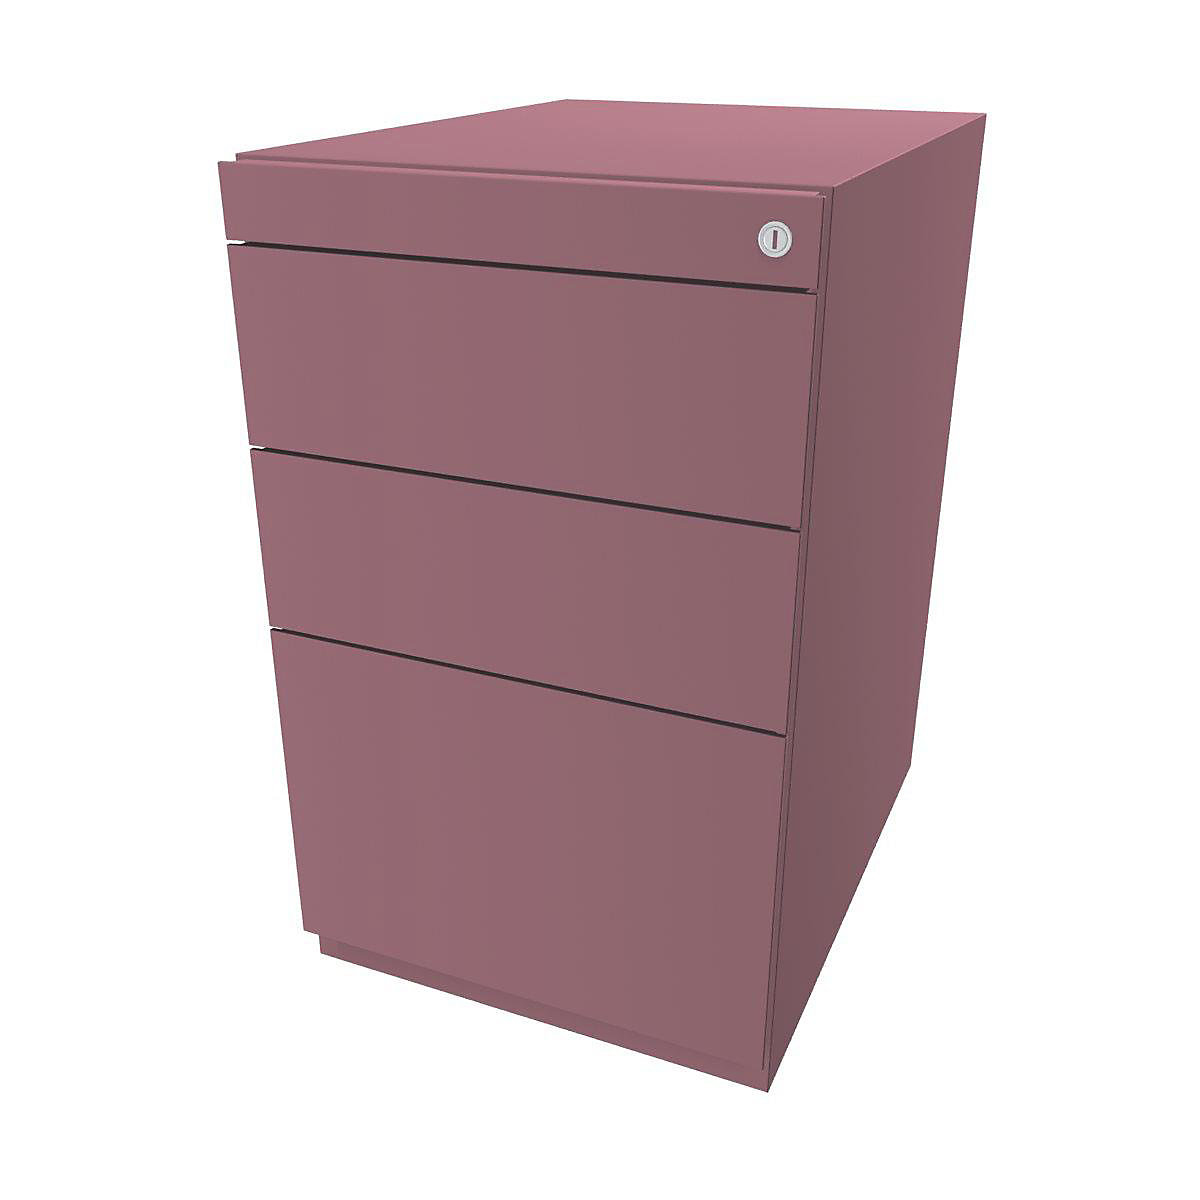 BISLEY Standcontainer Note™, mit 2 Universalschubladen, 1 Hängeregistratur, ohne Top, Tiefe 565 mm, pink